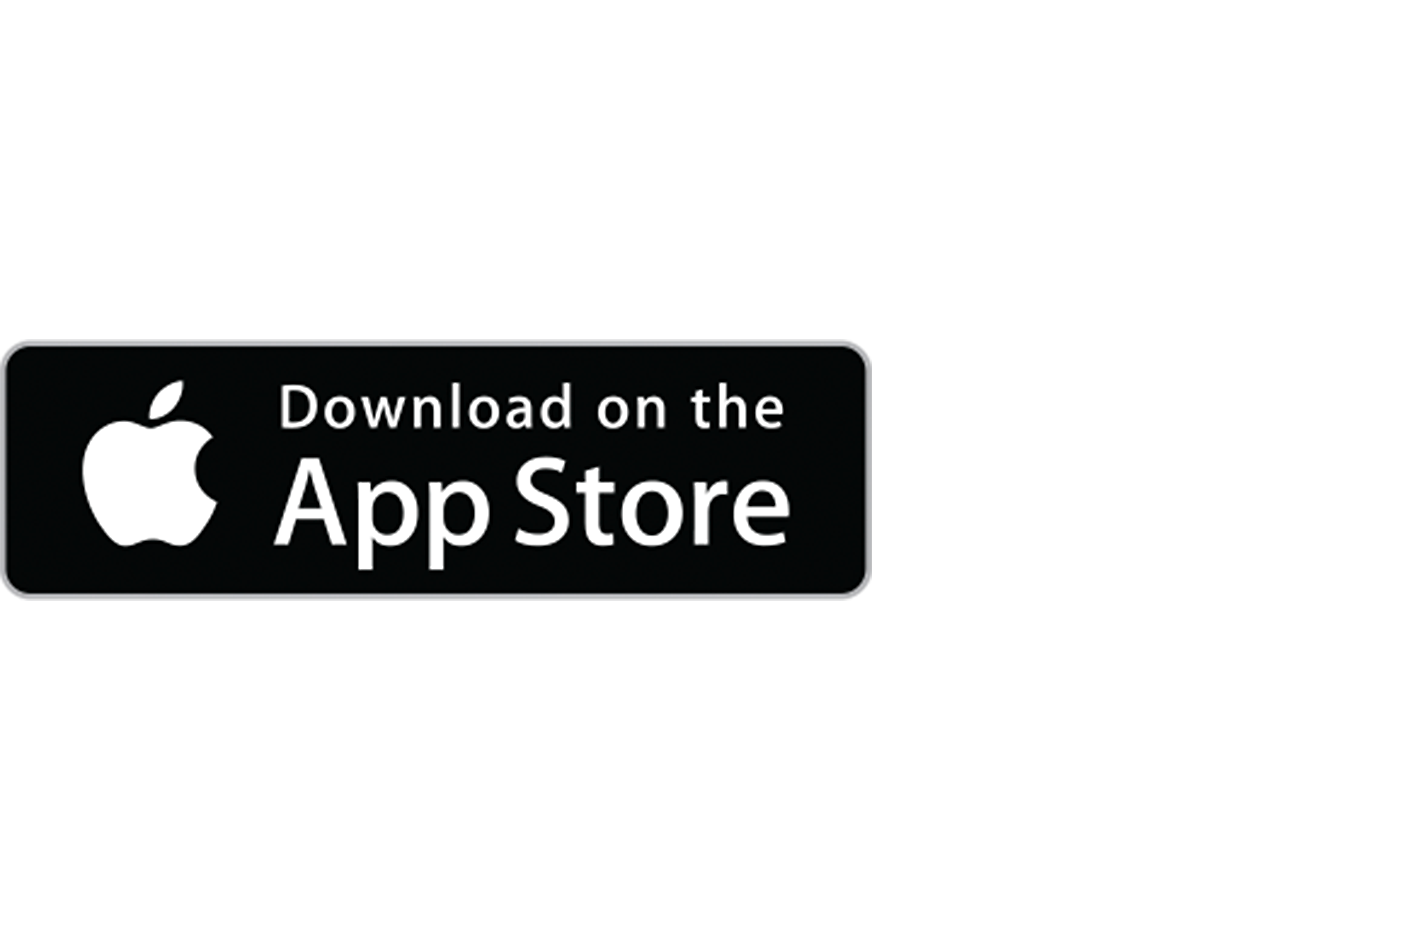 Imagen del logotipo de Apple App Store con el texto "Disponible en" encima